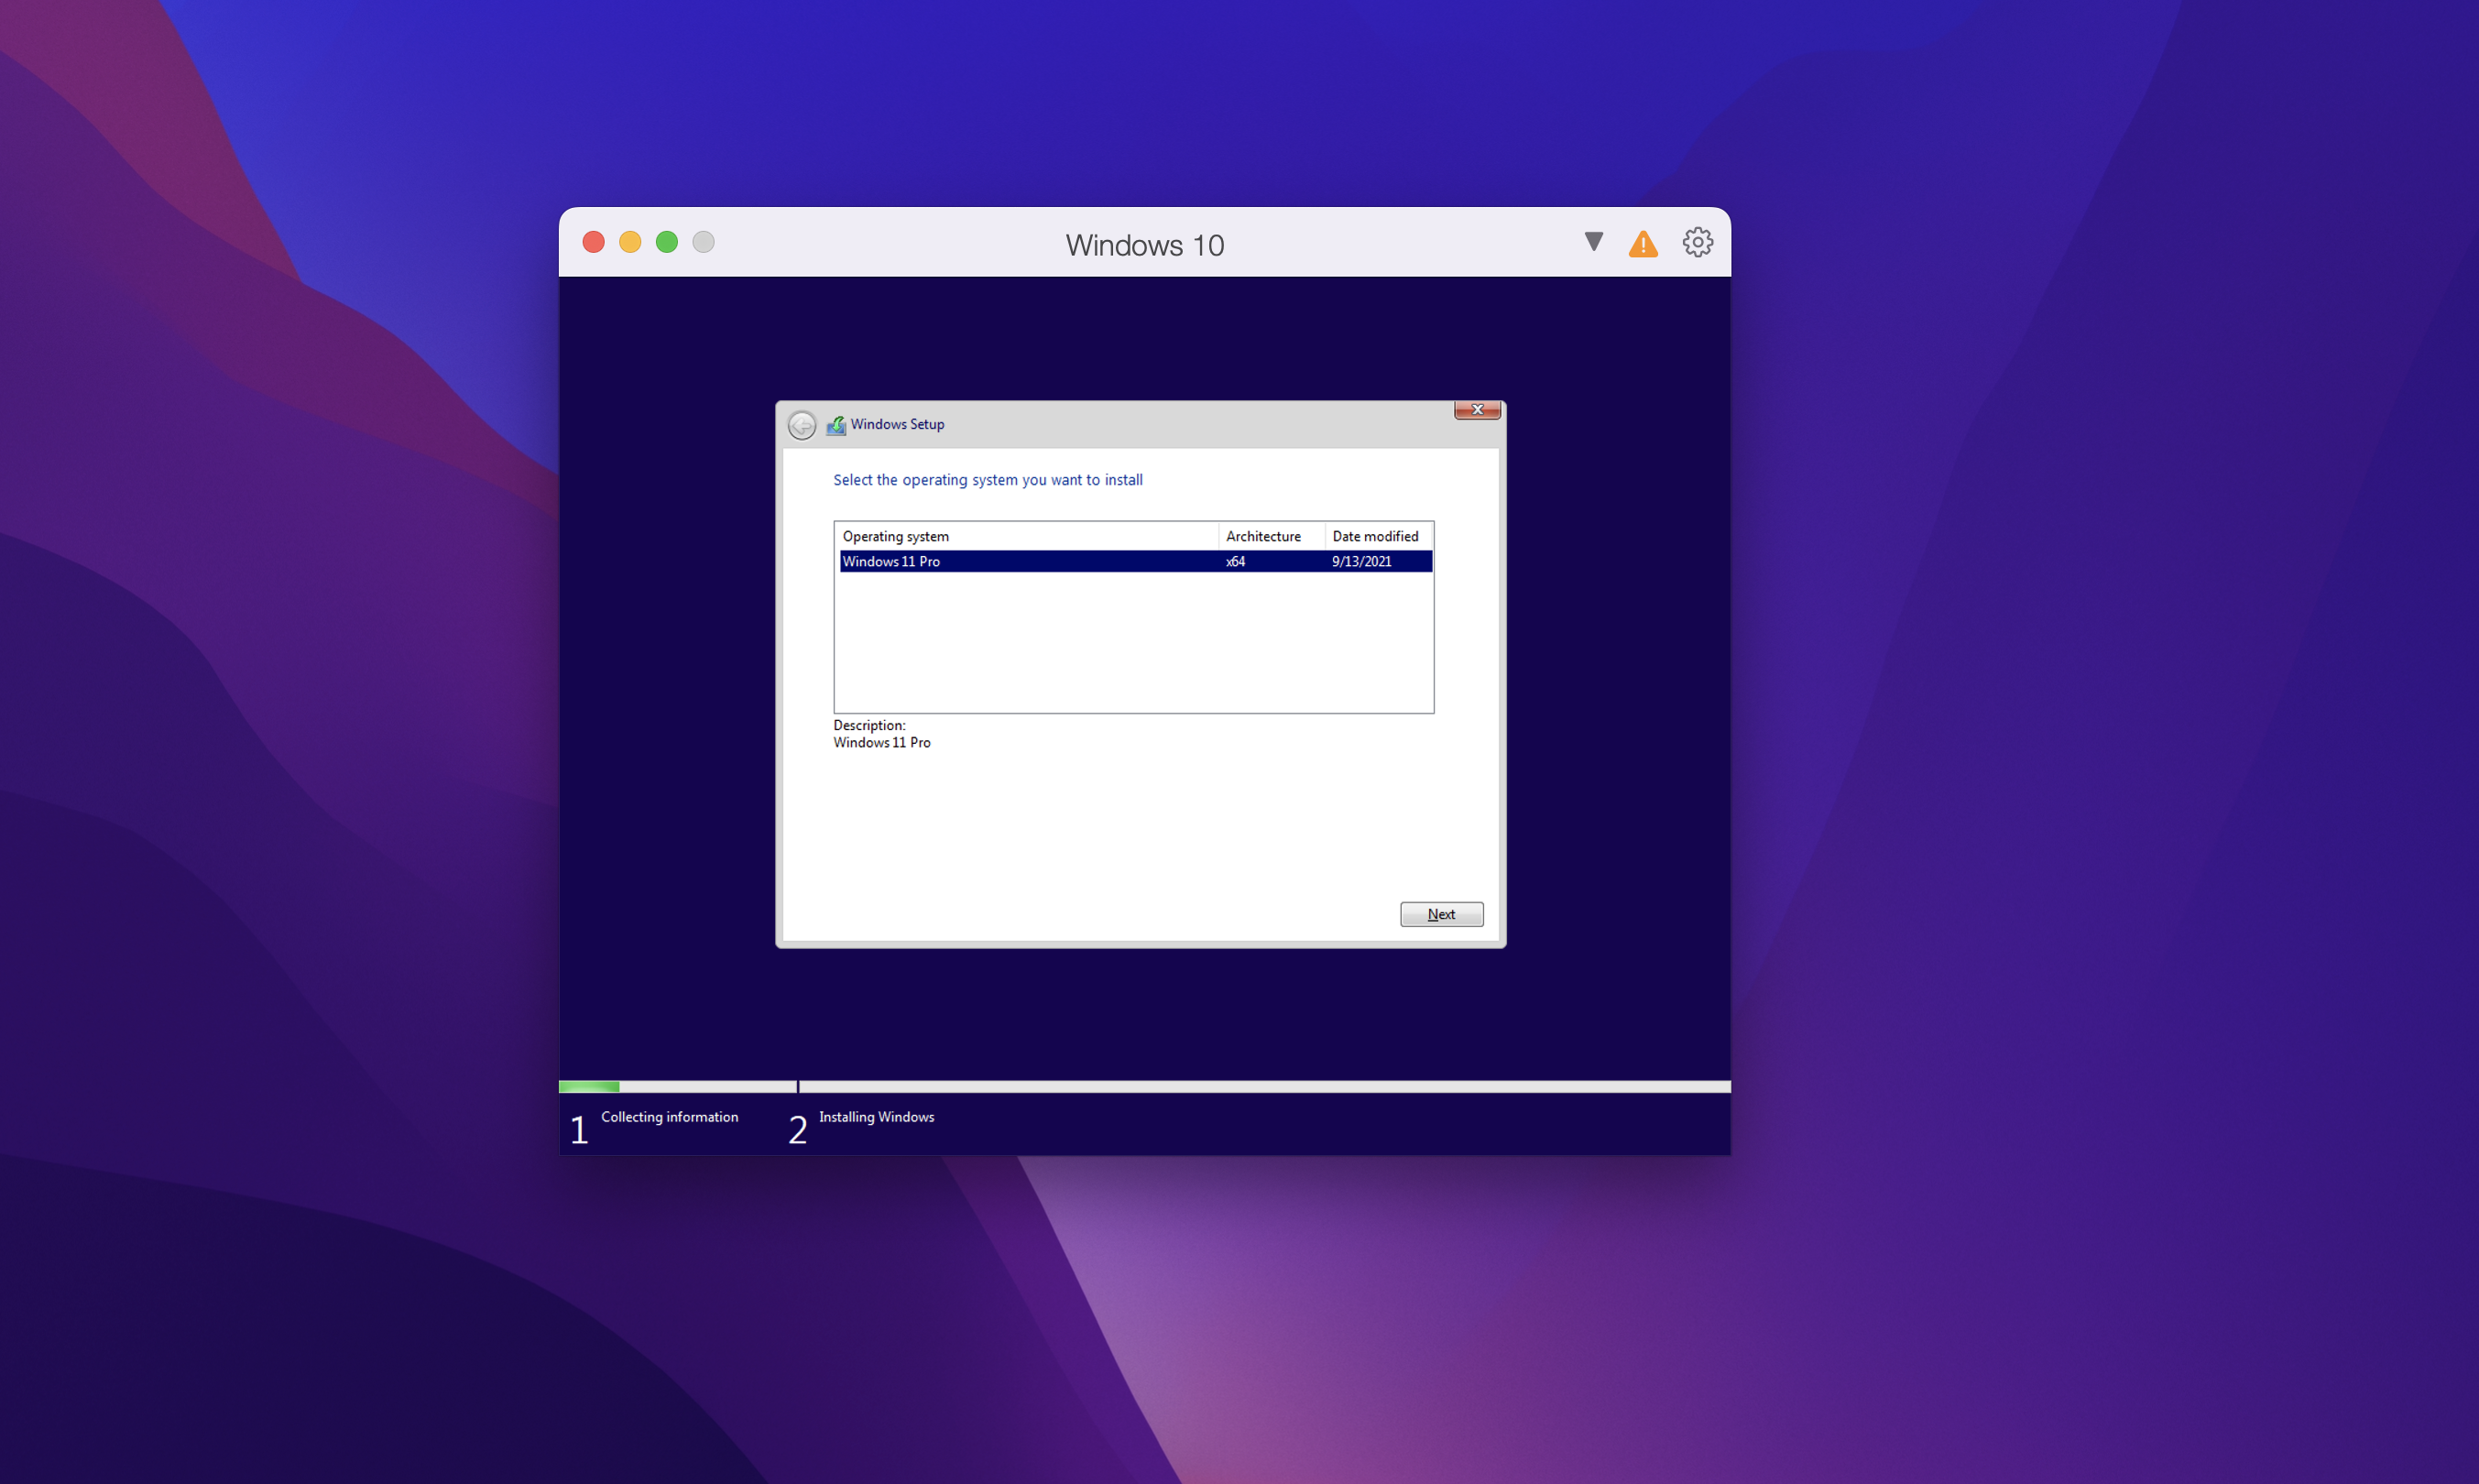 Tải Parallels Desktop for Mac bản 17 Full bản quyền – Hỗ trợ cài Windows trên Mac bản mới nhất 24